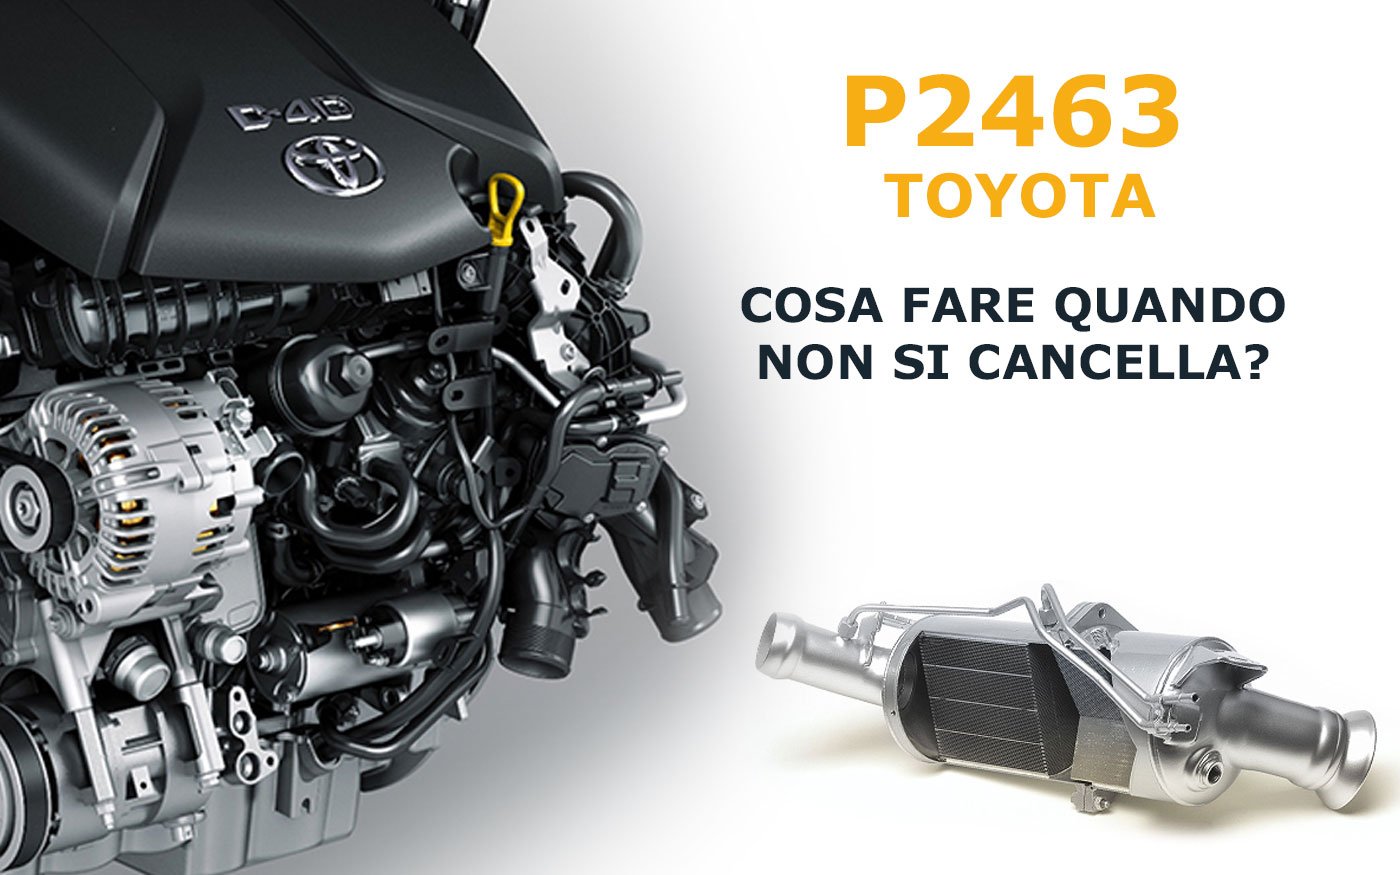 Maggiori informazioni su "P2463 Toyota: cosa fare quando non si cancella"